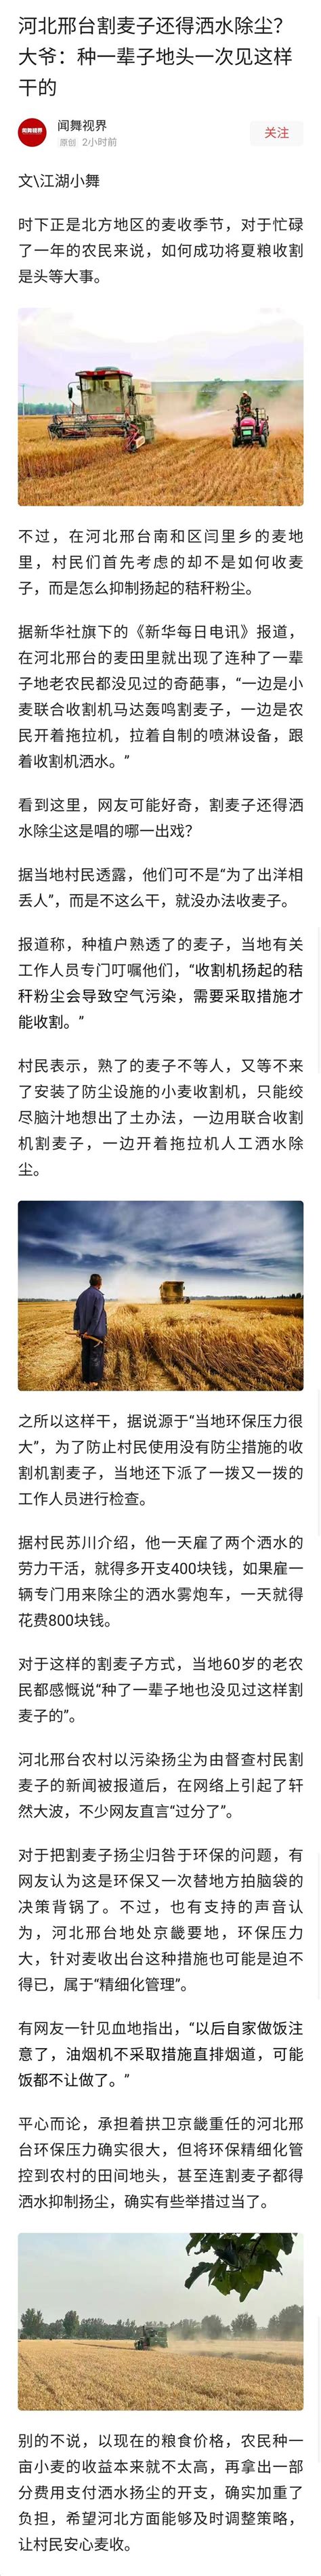 老农民在割麦子高清摄影大图-千库网